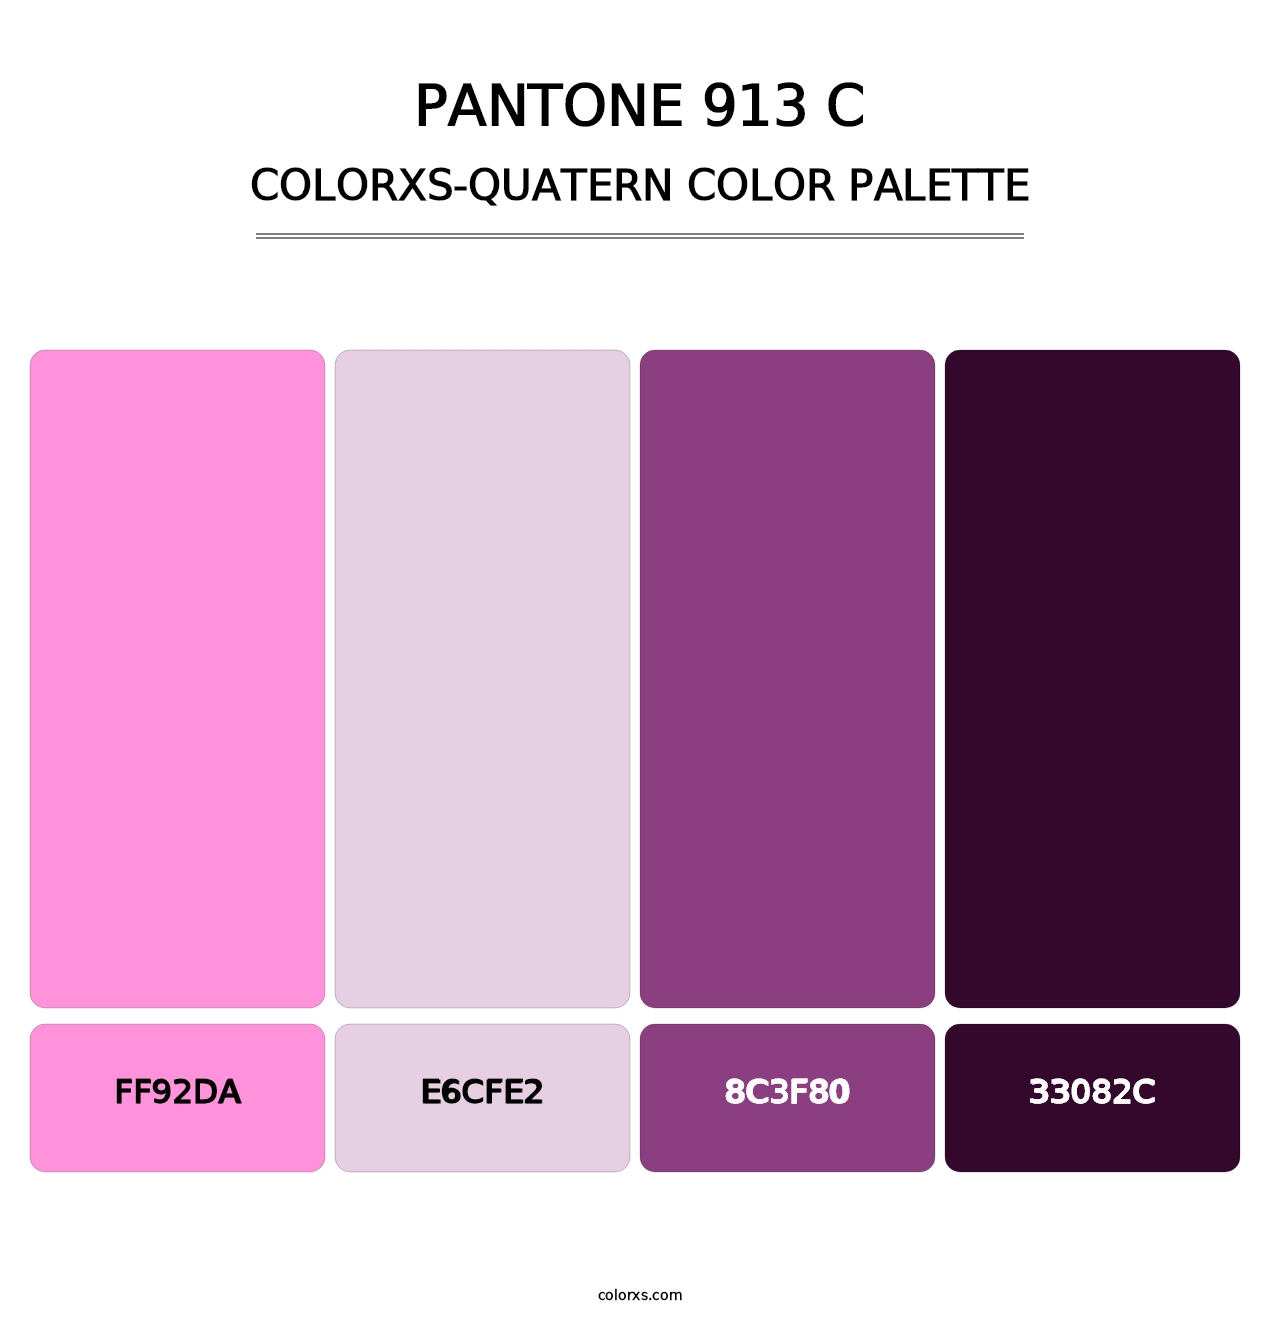 PANTONE 913 C - Colorxs Quatern Palette